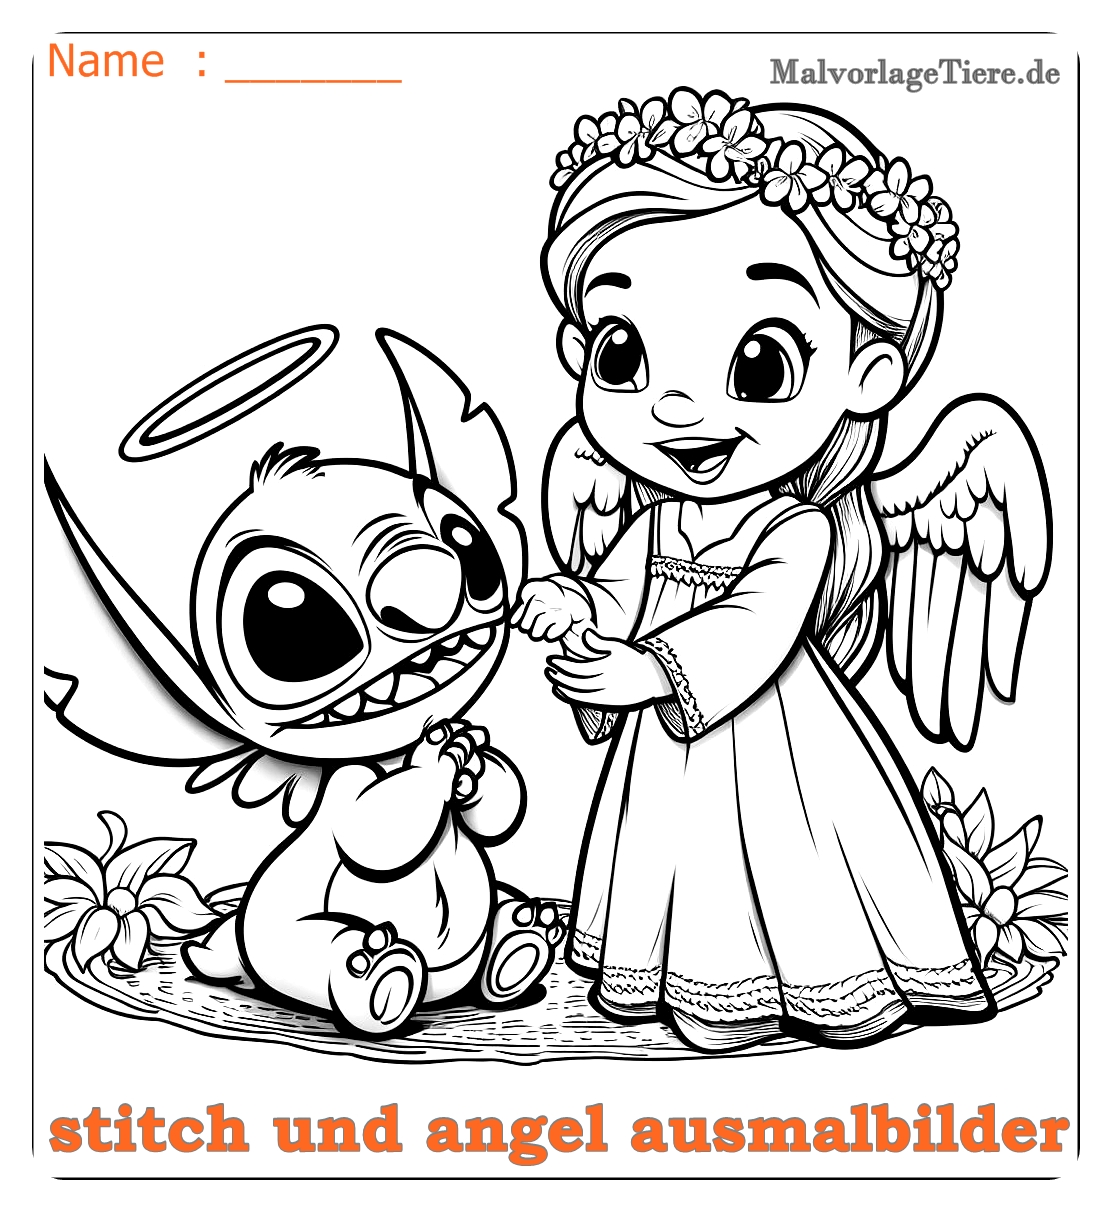 stitch und angel ausmalbilder01 by malvorlagetiere.de